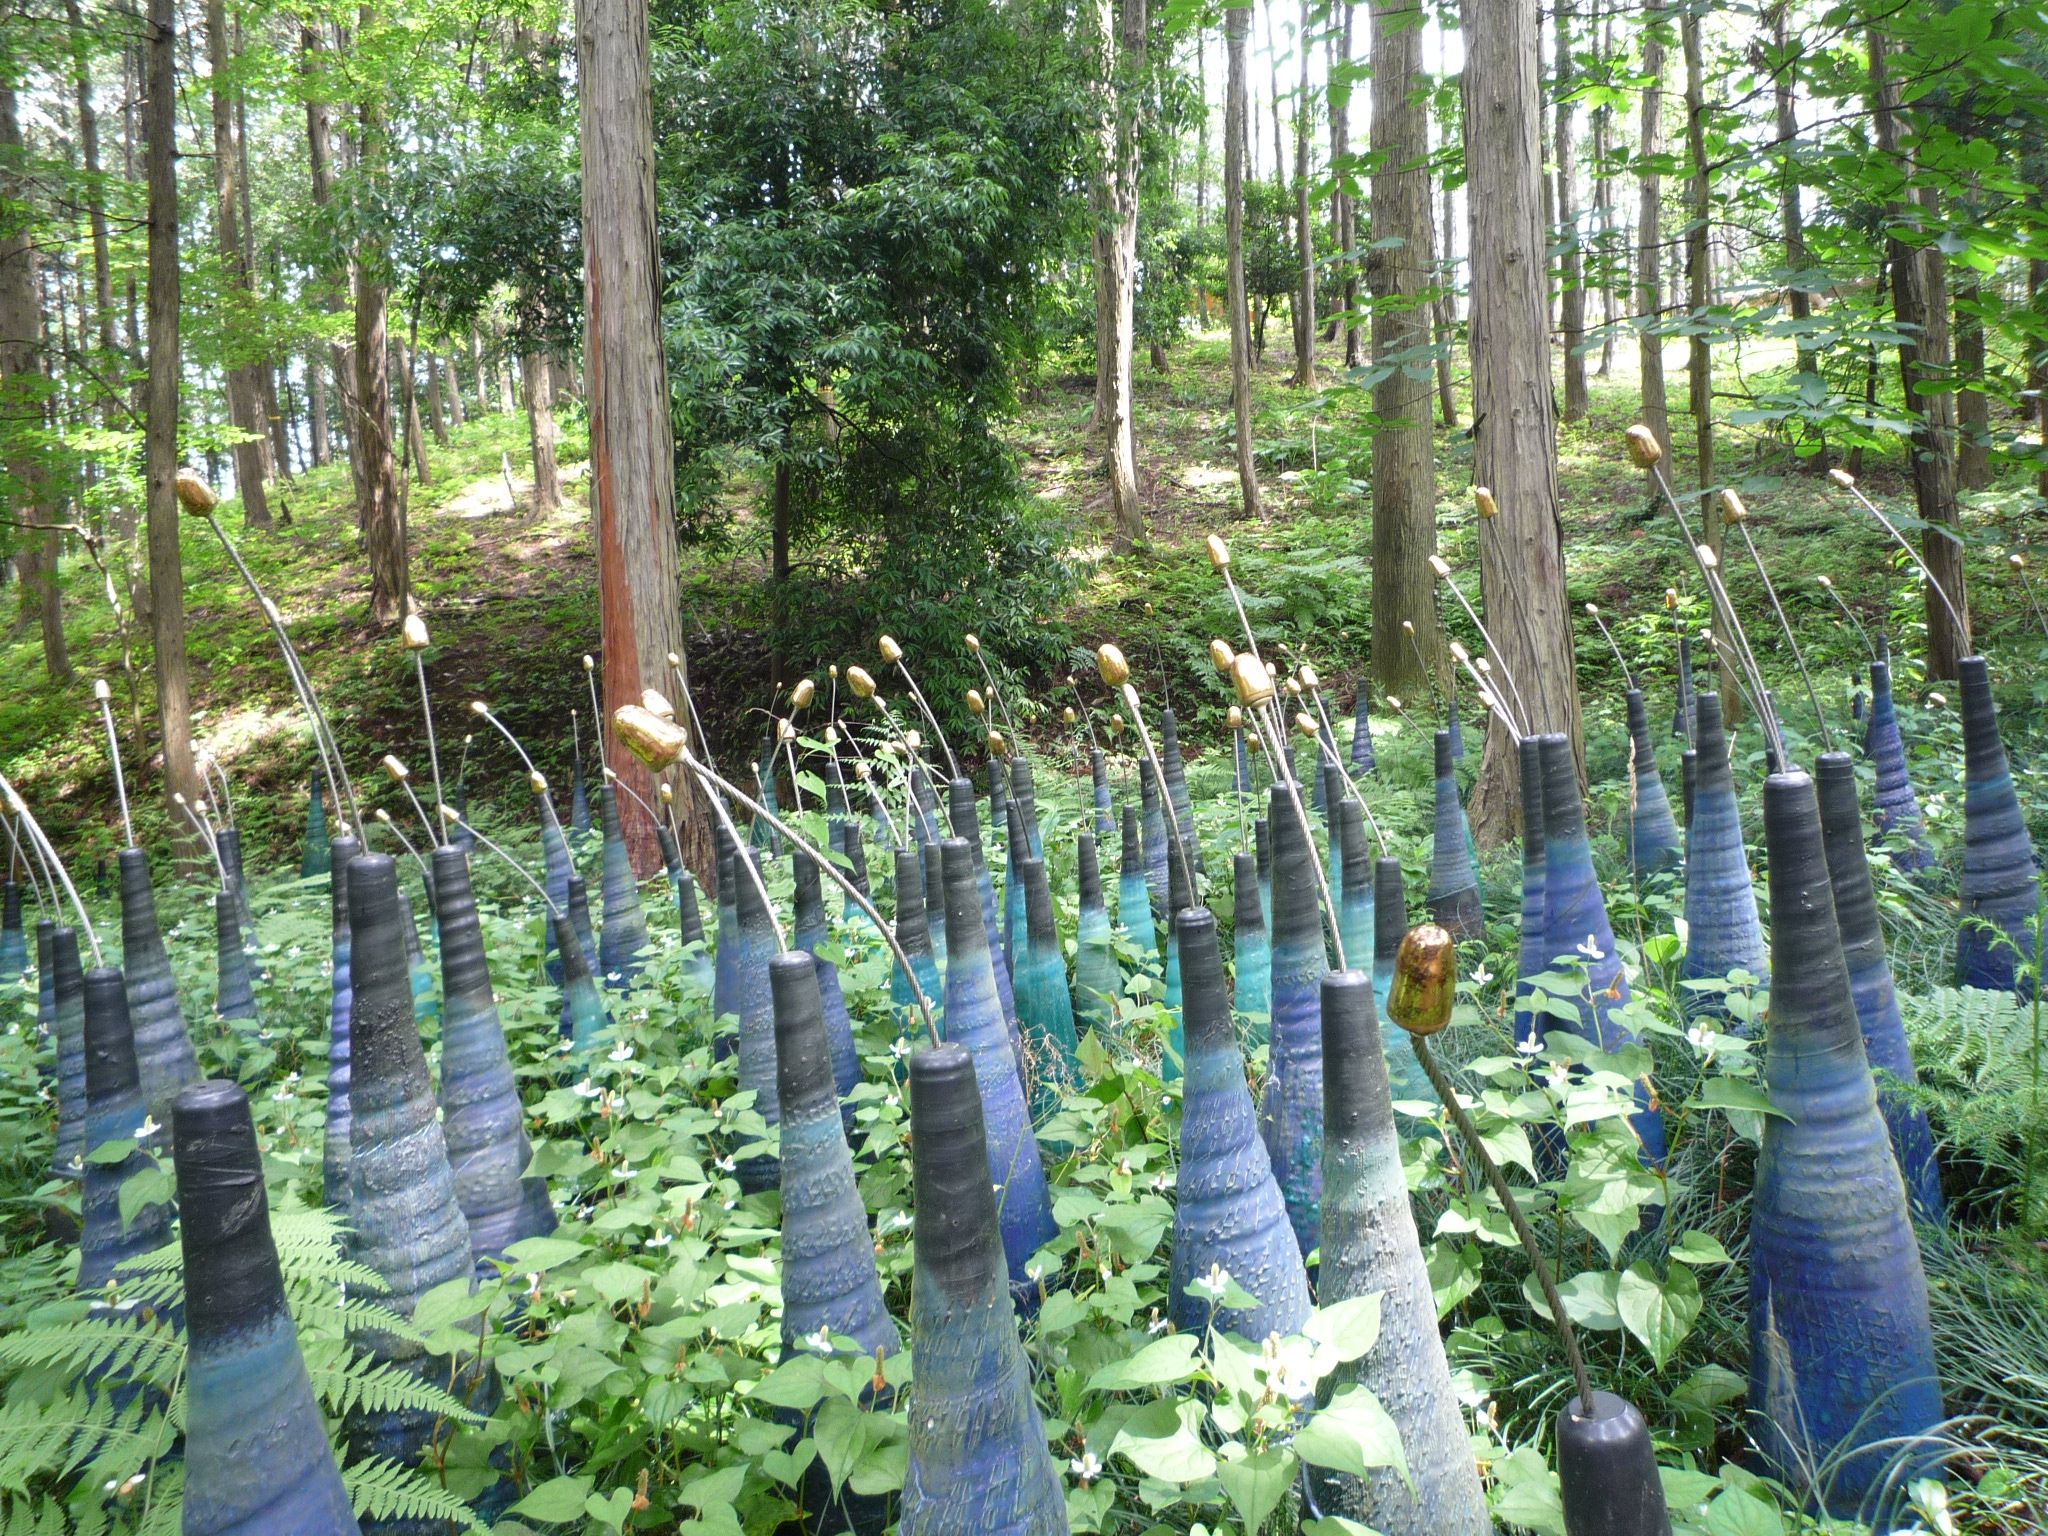 笠間芸術の森公園